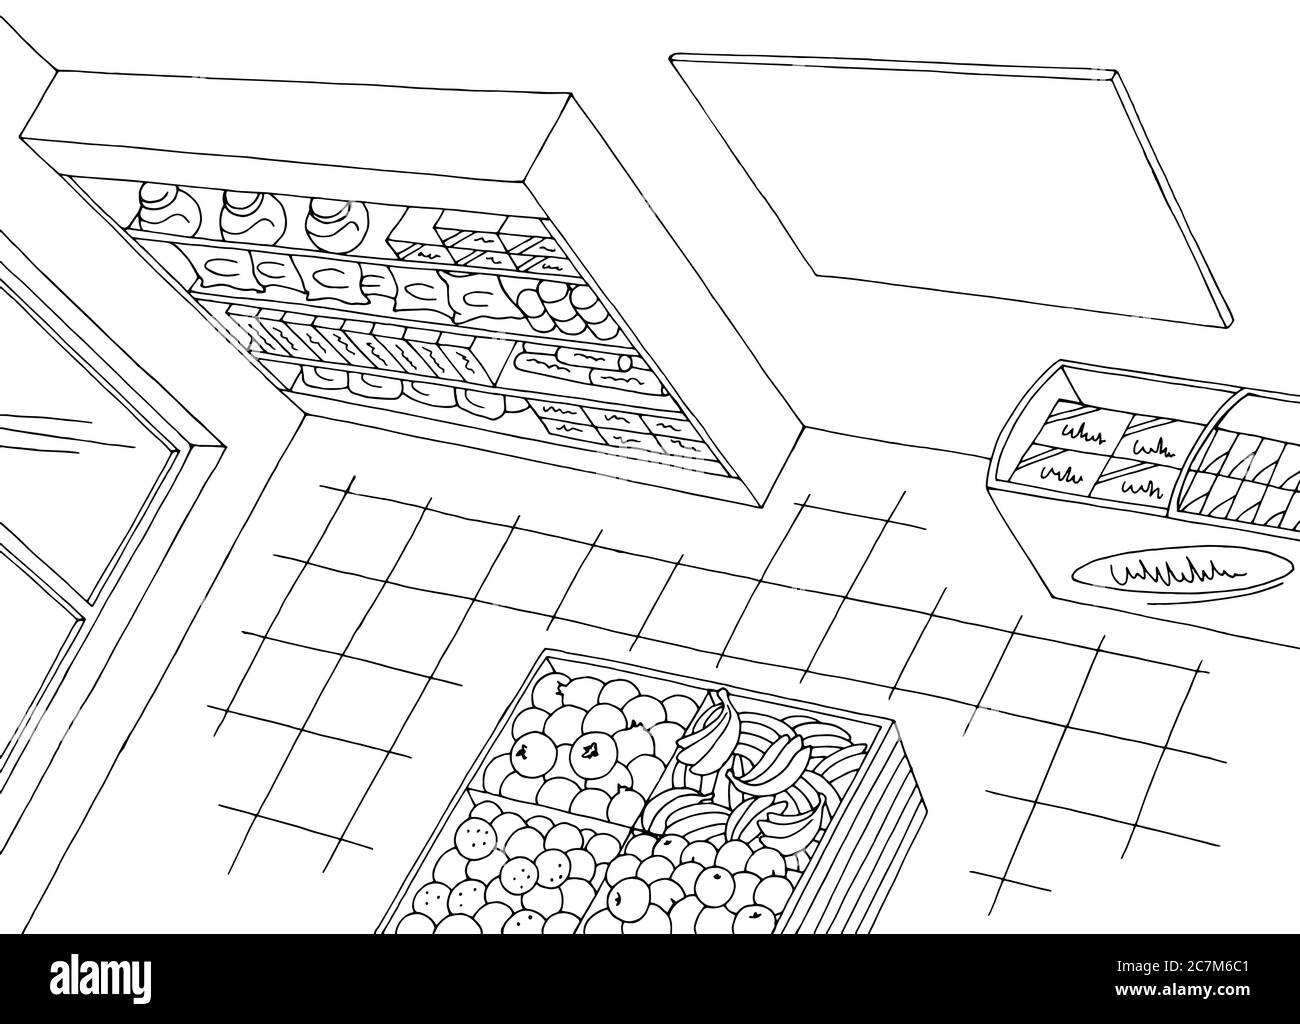 Lebensmittelgeschäft Laden Innenraum Draufsicht von oben Antenne schwarz weiß Grafik Skizze Illustration Vektor Stock Vektor